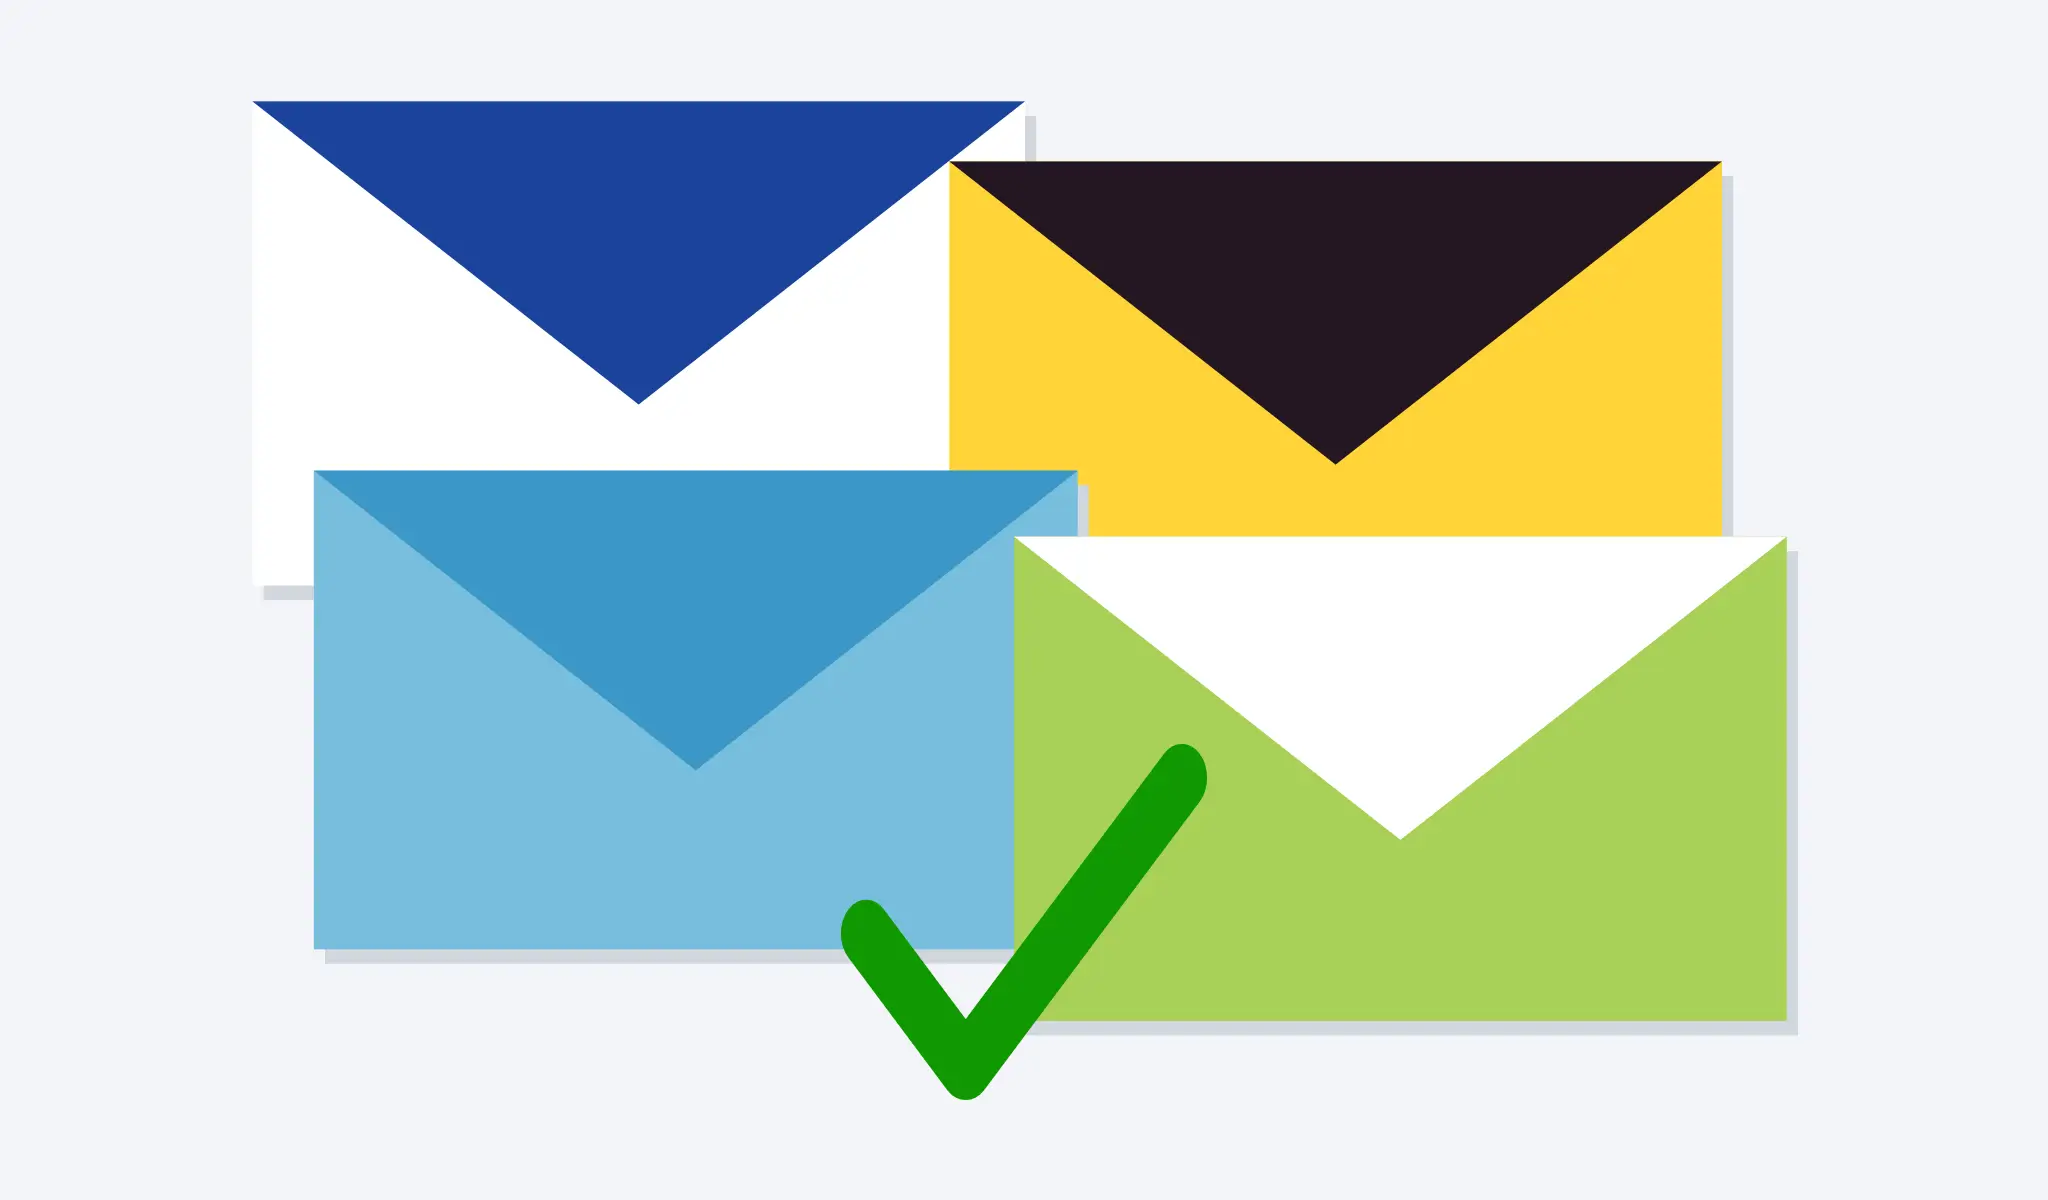 Digitales - Deutsche E-Mail Dienste - Welche sind die 3 besten?